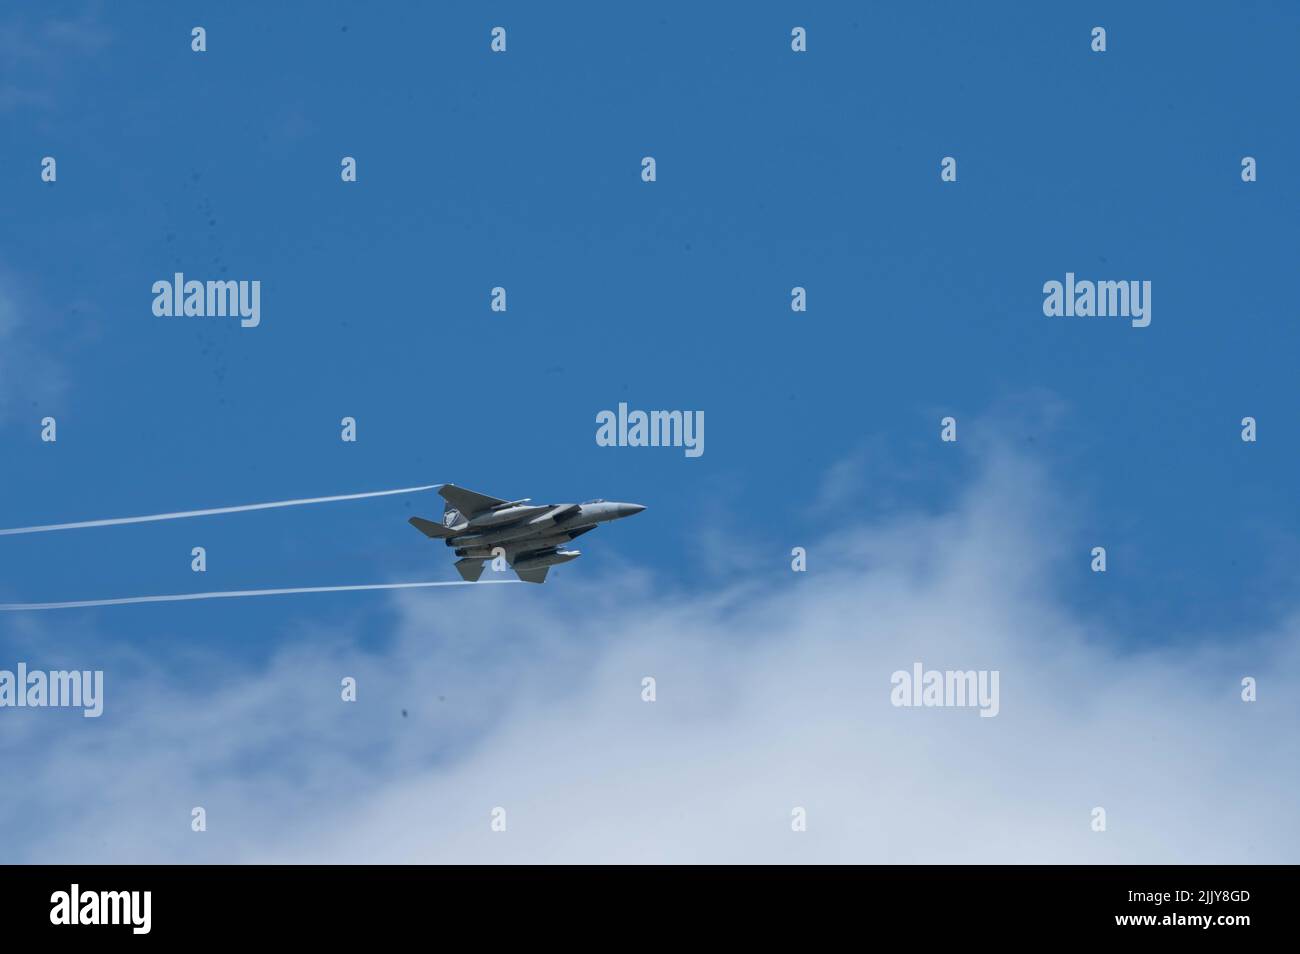 Ein F-15C Adler-Kampfjet führt einen Streiflauf auf dem Pine Castle Bombenanschlag in Altoona, Florida, 27. Juli 2022 durch. Straffing zu bedeutet, wiederholt mit Bomben oder Maschinengewehrfeuer von niedrig fliegenden Flugzeugen anzugreifen. Die dem Wartungsgeschwader 125., Florida Air National Guard, zugewiesenen Flieger wurden eingeladen, die von Piloten regelmäßig im Rahmen eines routinemäßigen Flugtrainings durchgeführten Strafe-Läufe miterleben zu können. (USA Foto der Air National Guard von Tech. Sgt. Chelsea Smith) Stockfoto